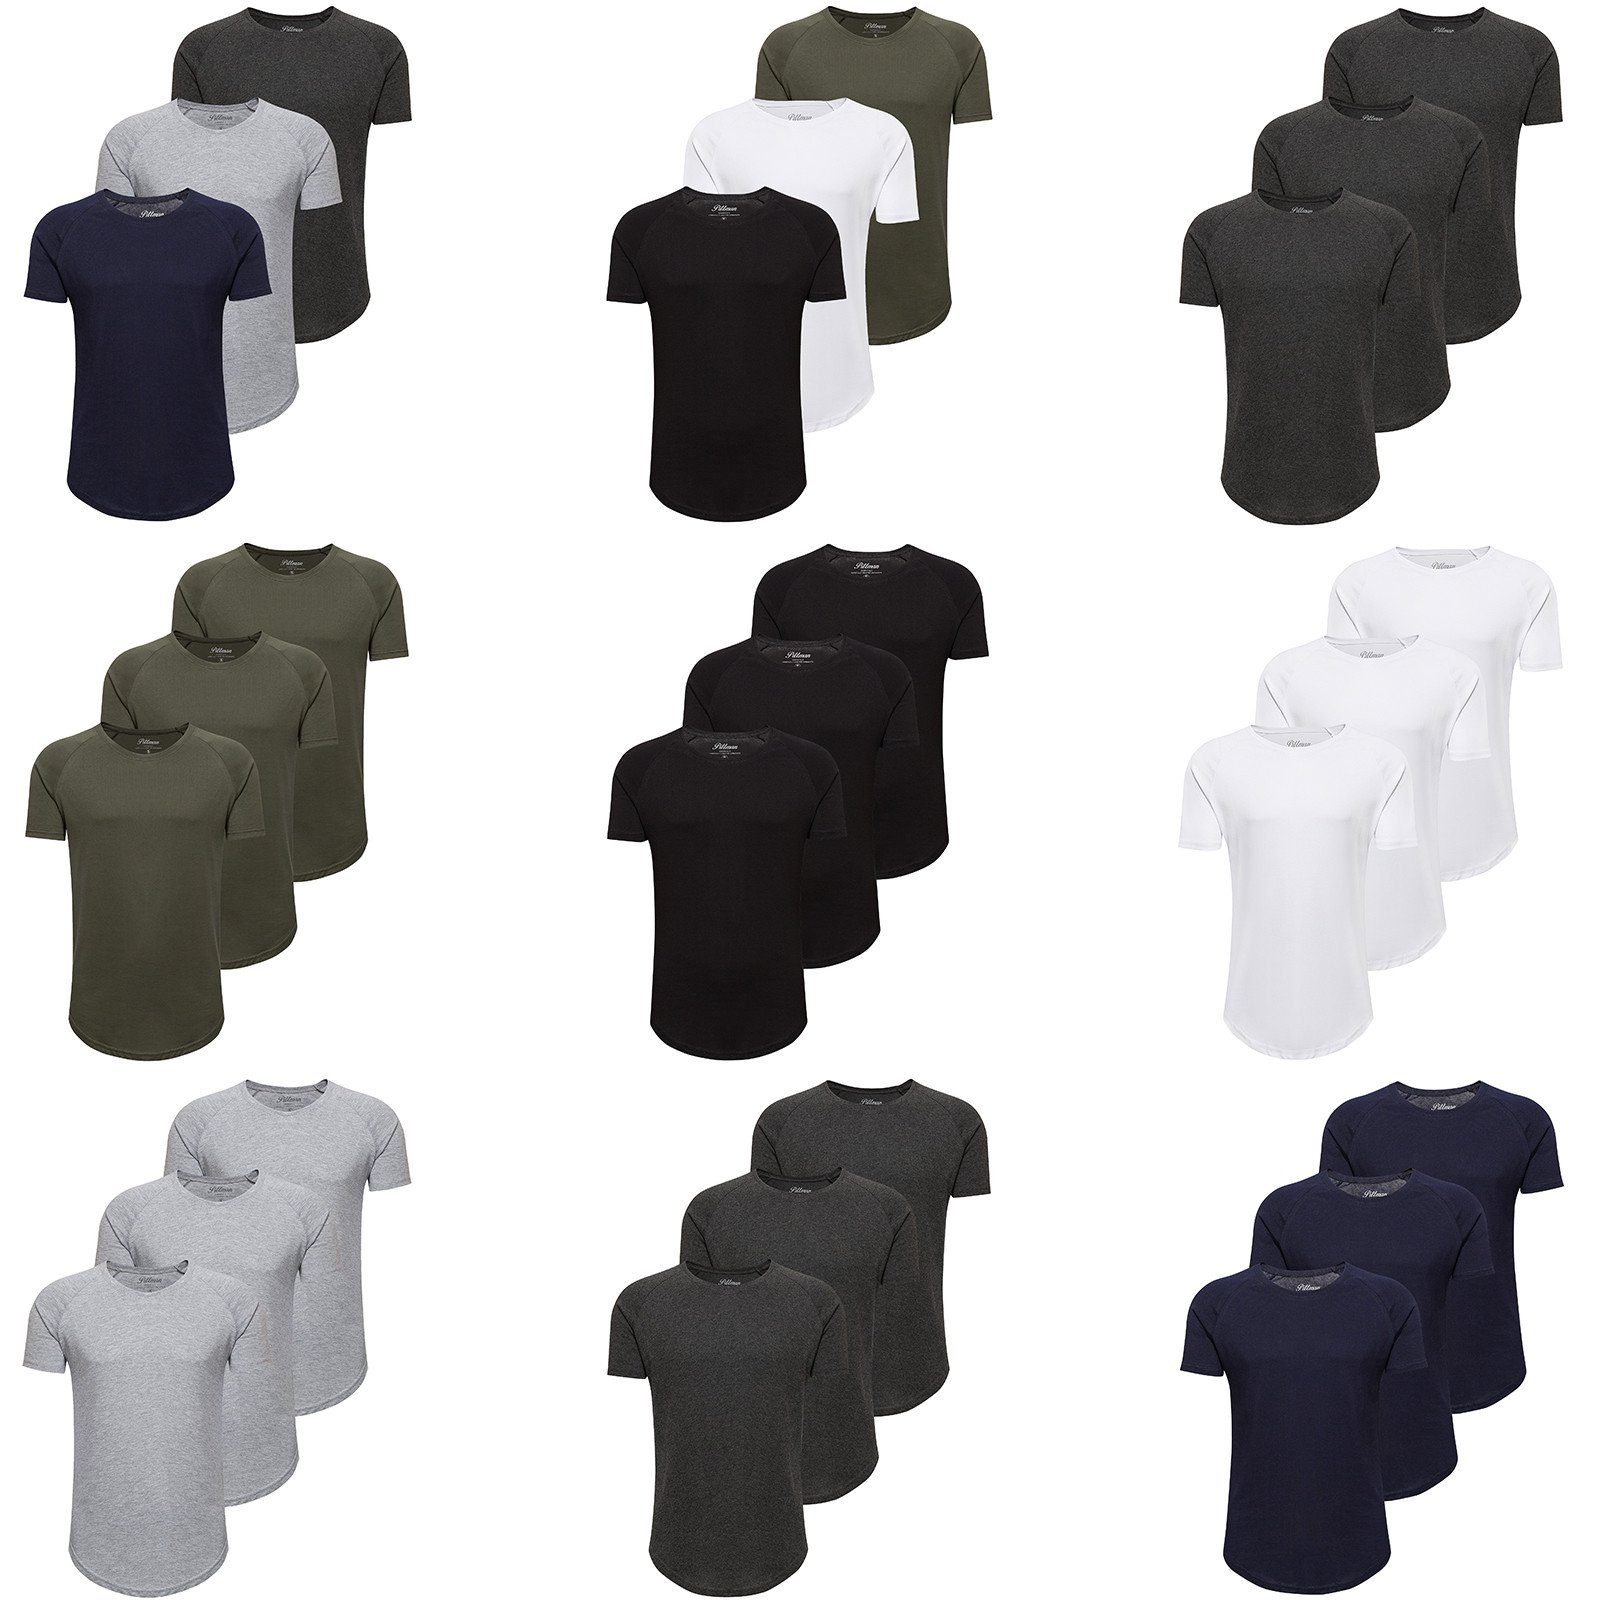 T-Shirt 3-Pack Oversize Pittman Herren Schwarz Rundhals 1640073) T-Shirt T-Shirt Finn 3er-Pack) (Set, (Black